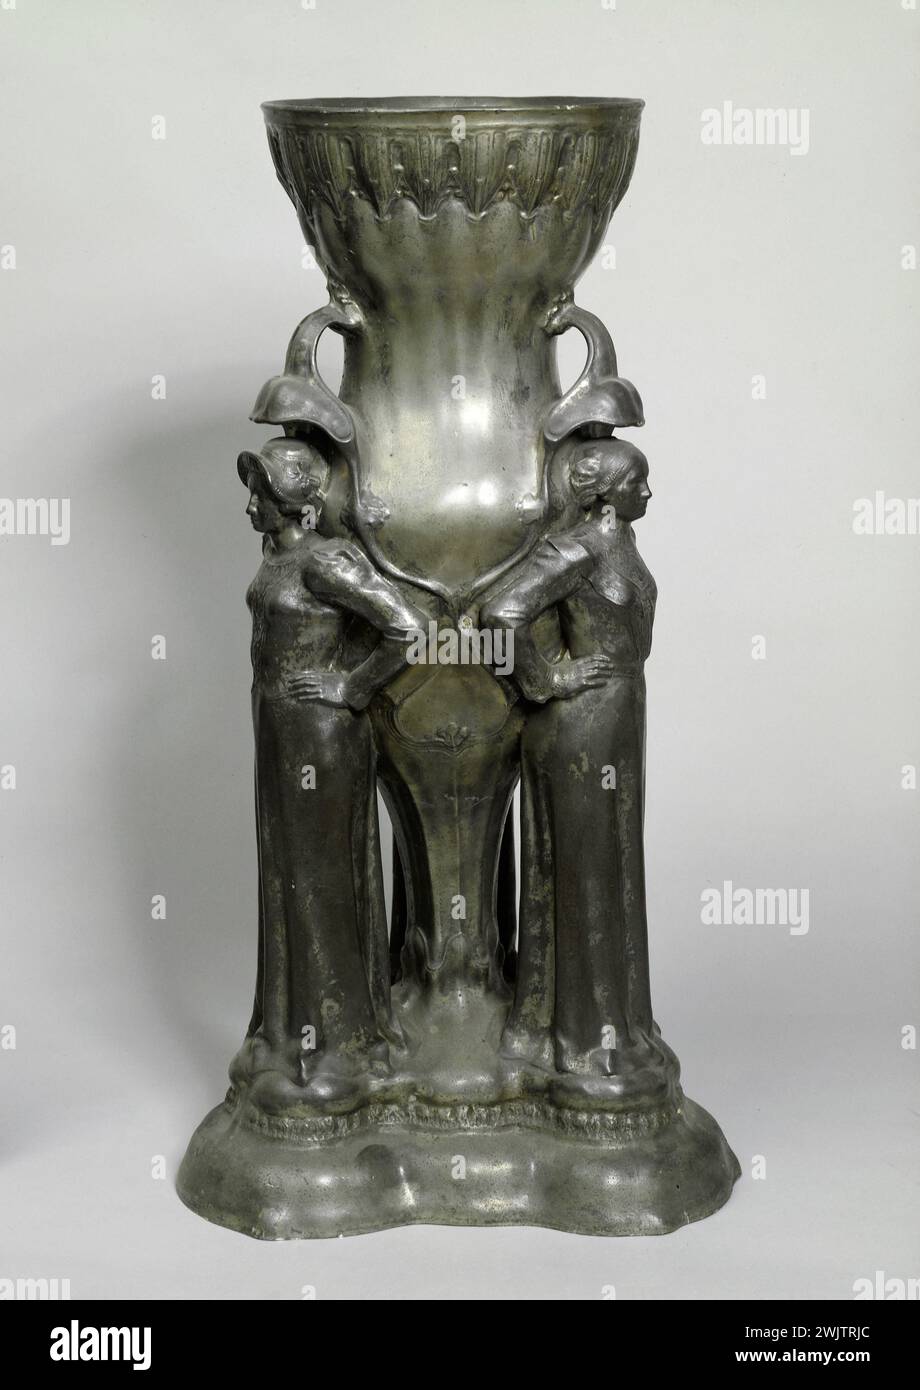 Jean Baffier (1851-1920). 'Caryatids vase', 1901. Etain. Museum of Fine Arts of the City of Paris, Petit Palais. Art Nouveau, Caryatide, Tain, Woman, Support, Vase Stock Photo